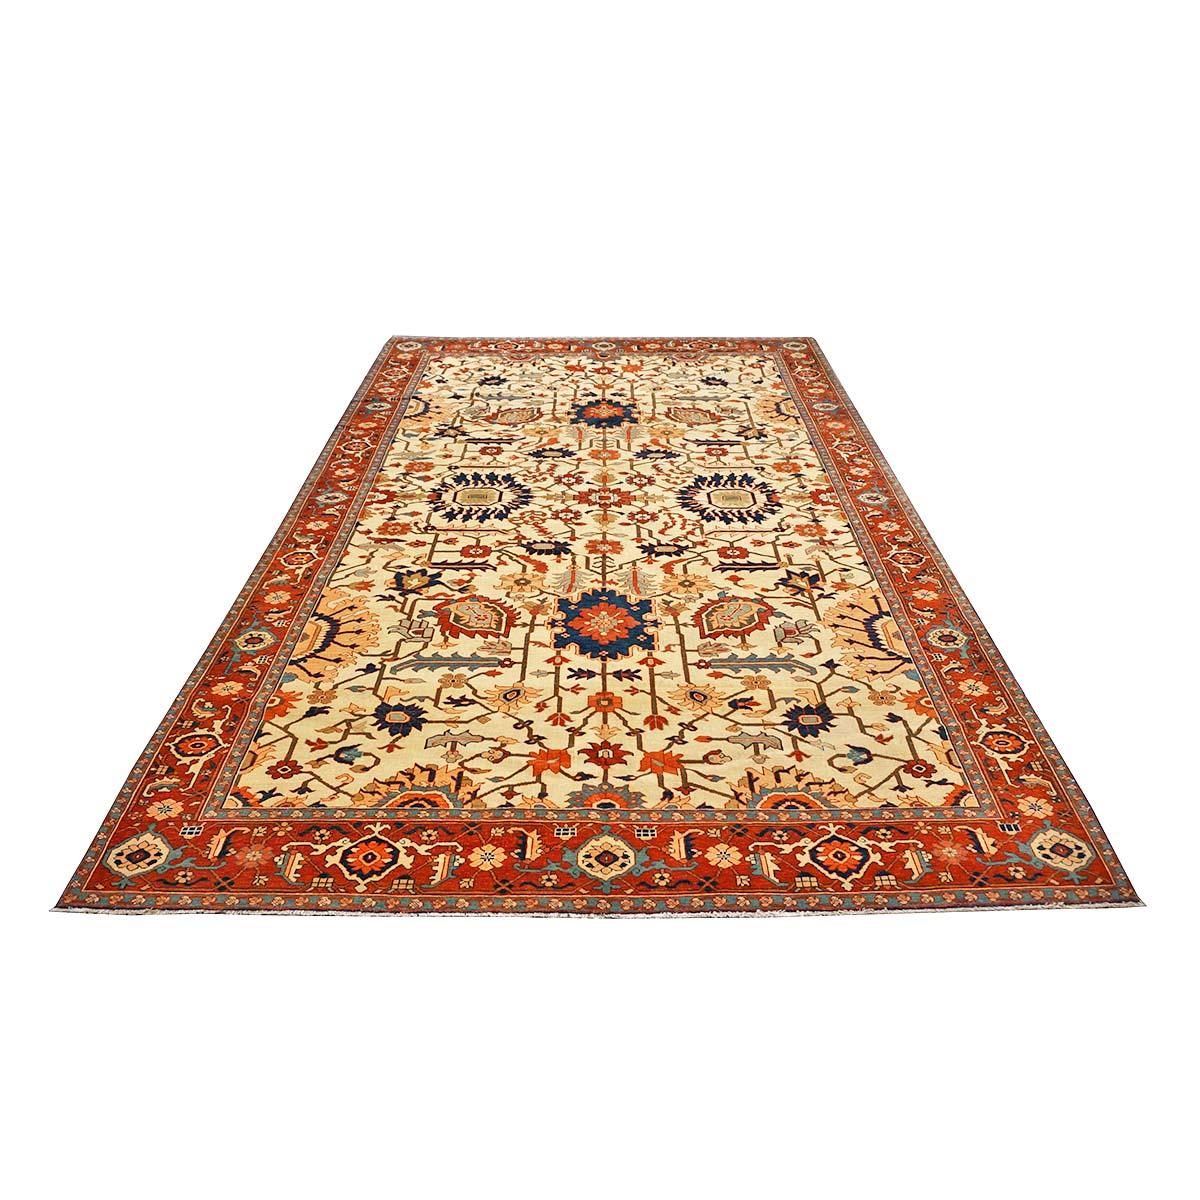  Ashly Fine Rugs präsentiert eine neue antike Reproduktion persischen Serapi 7x11 handgefertigt Bereich Teppich. Persische Serapi-Teppiche gehören zu den begehrtesten Teppichen bei Kennern, Sammlern und Innenarchitekten. Hergestellt aus pflanzlich